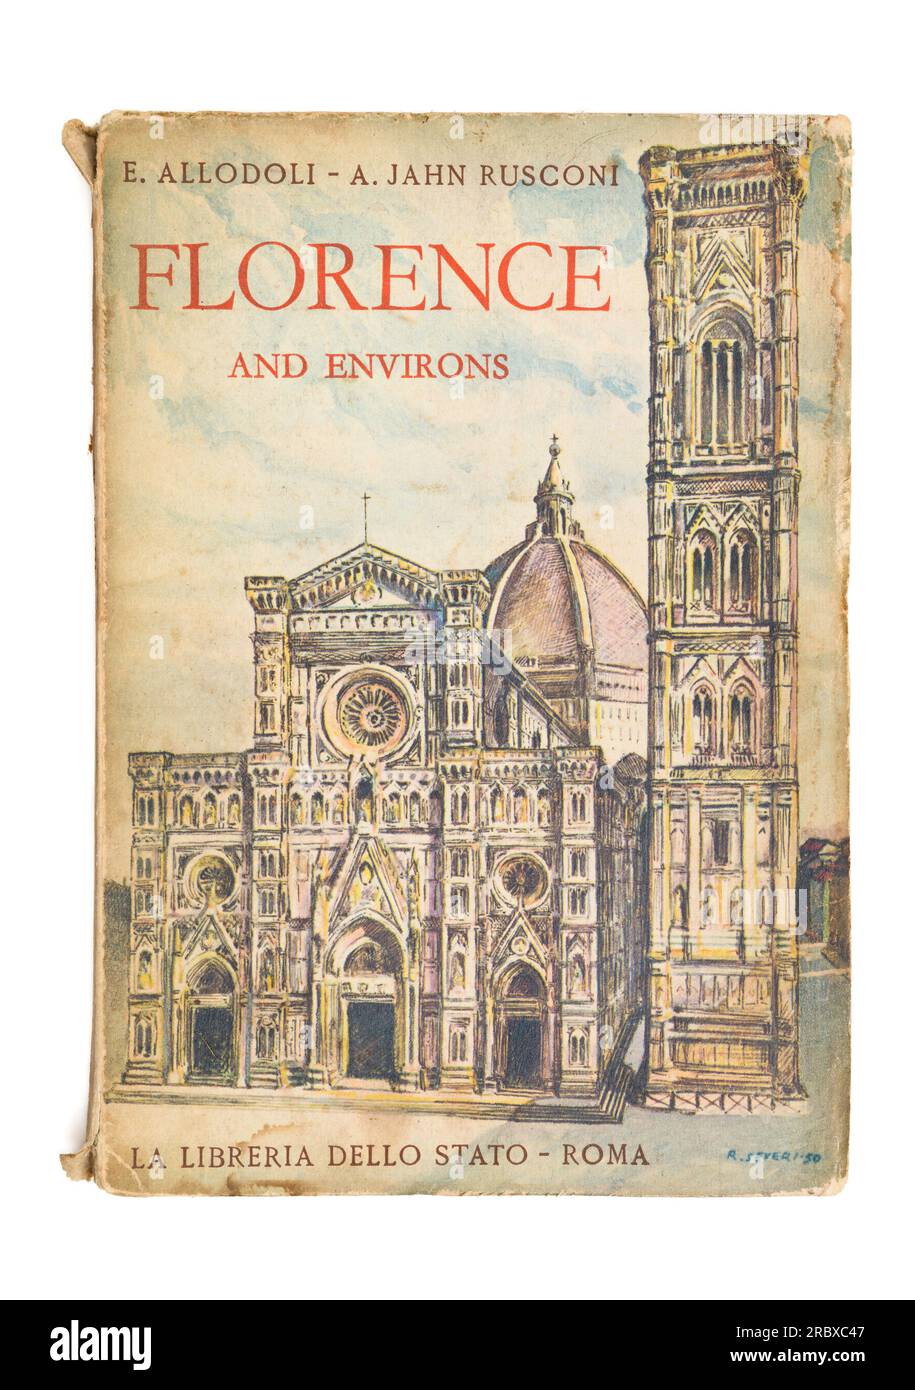 Cover des alten Florenz Reiseführer Florenz und Umgebung von Allodoli und Rusconi Stockfoto